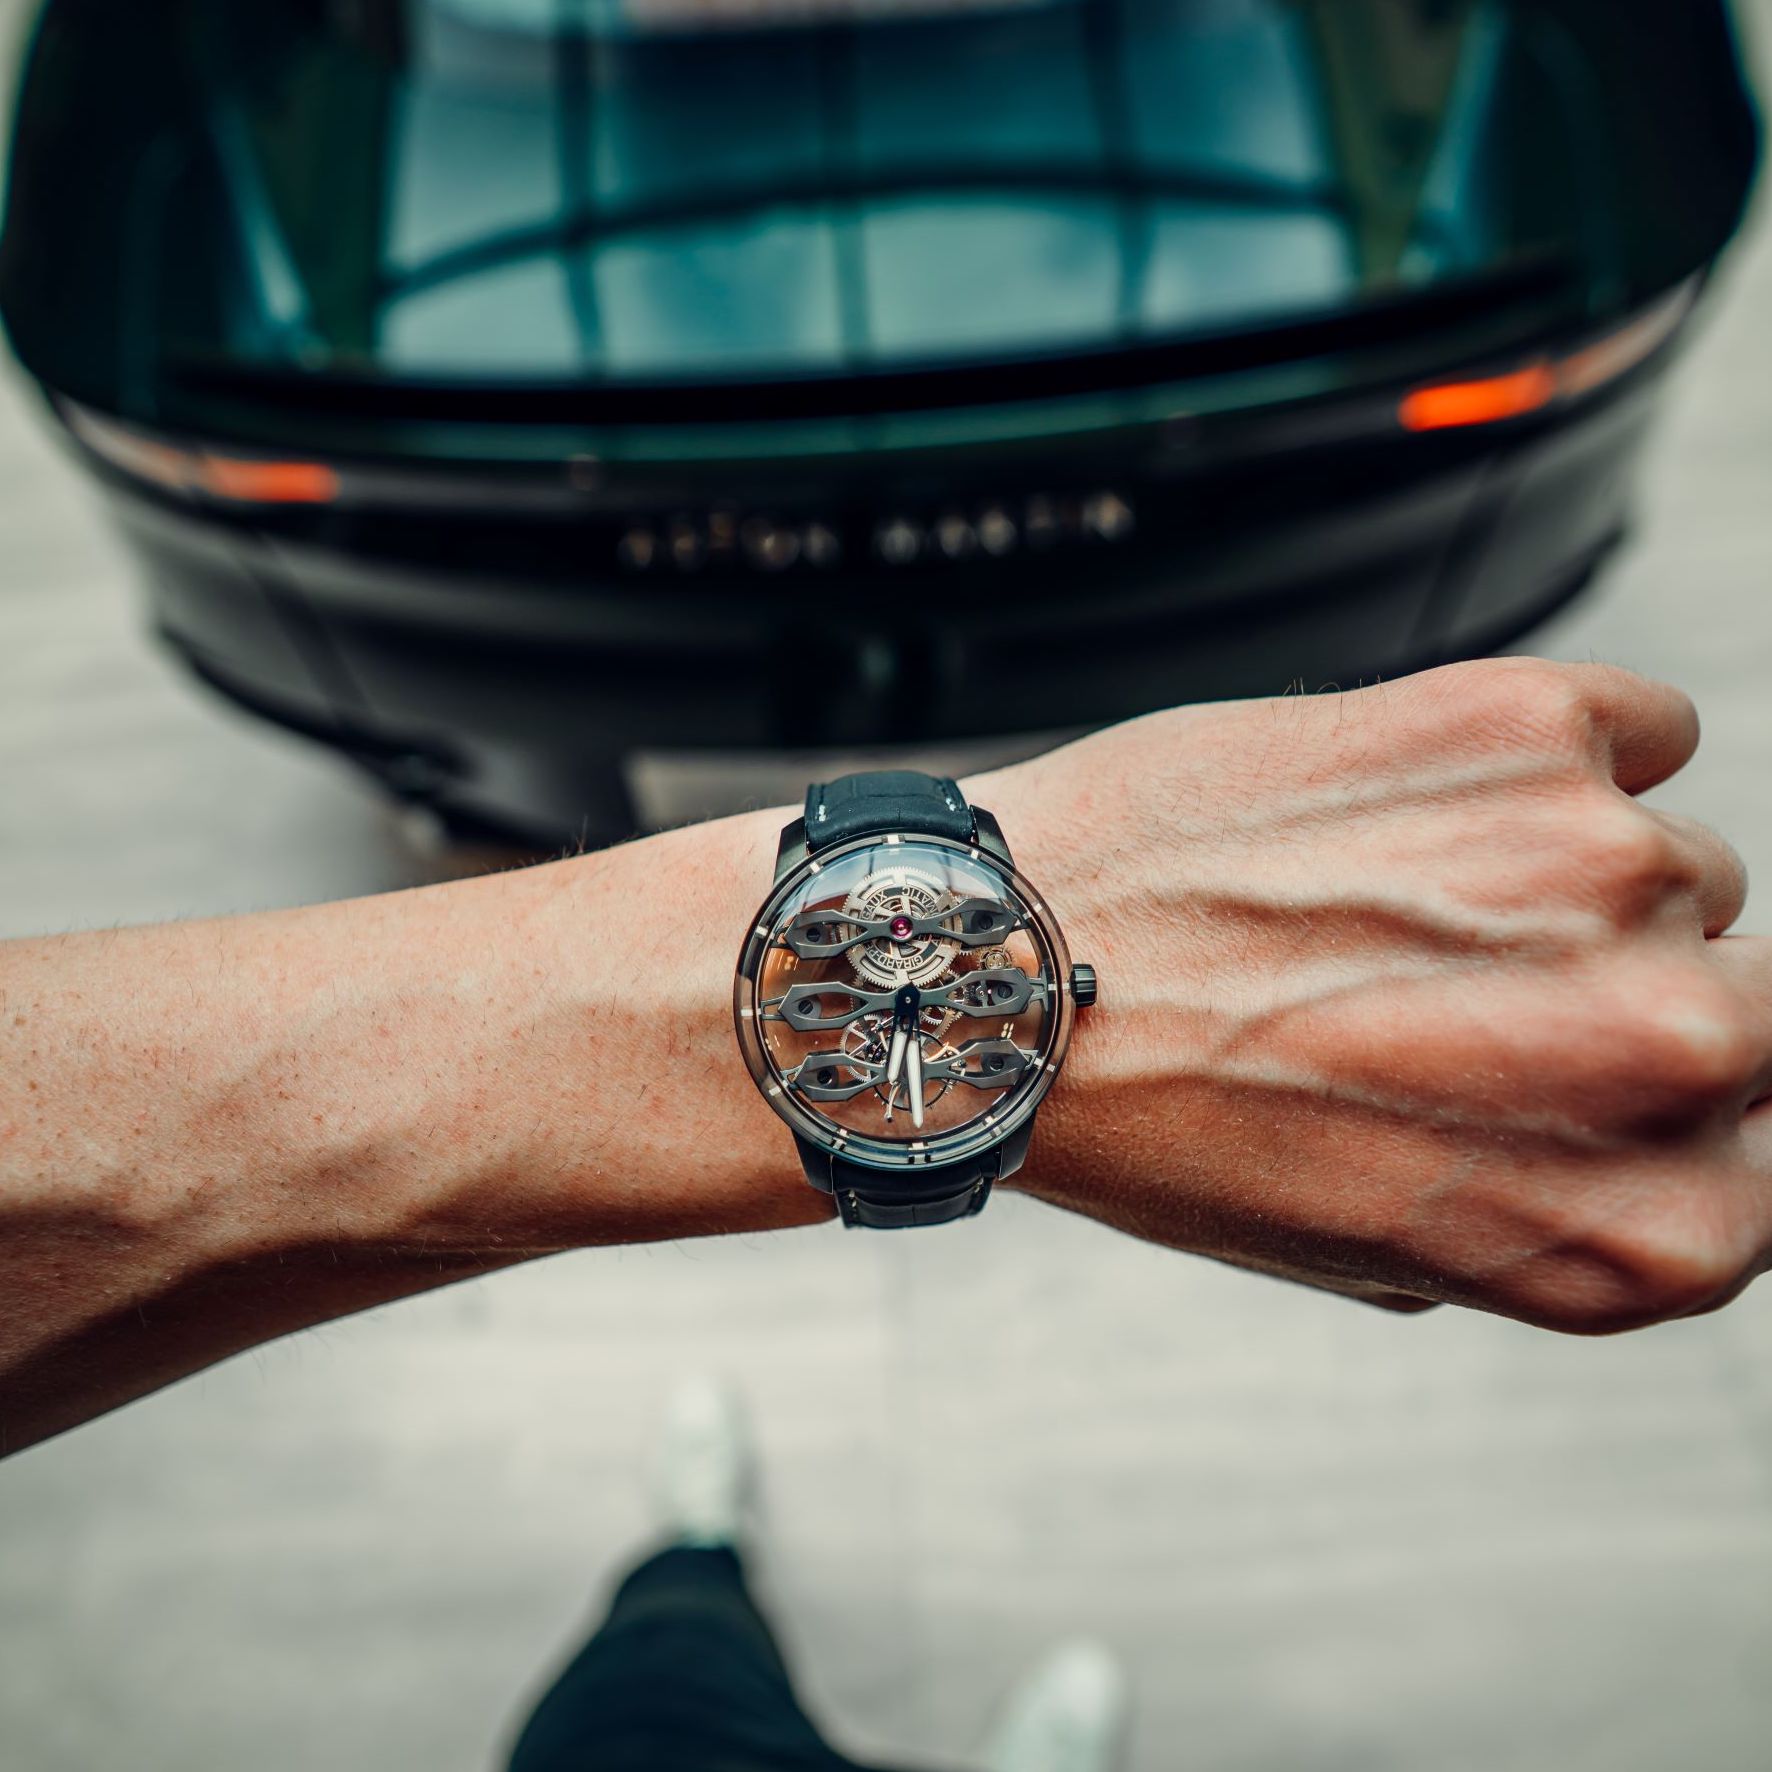 Новые часы, вдохновленные автоспортом, демонстрируют, что связь между автомобилями и часами крепче, чем когда-либо